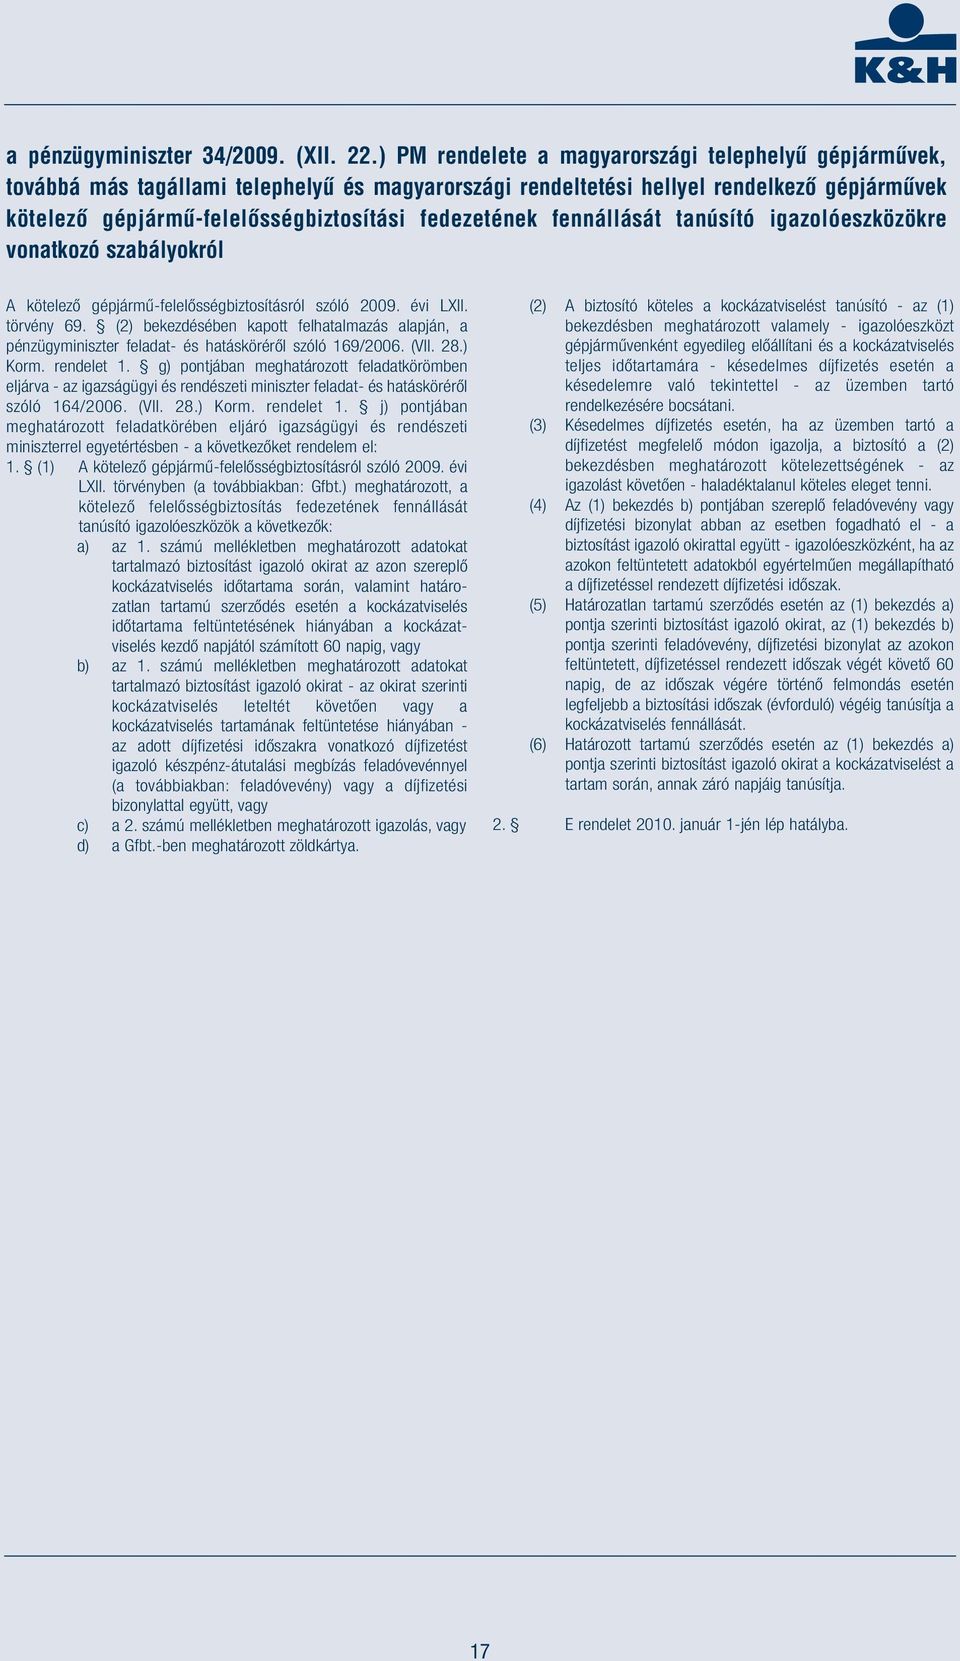 fedezetének fennállását tanúsító igazolóeszközökre vonatkozó szabályokról A kötelező gépjármű-felelősségbiztosításról szóló 2009. évi LXII. törvény 69.